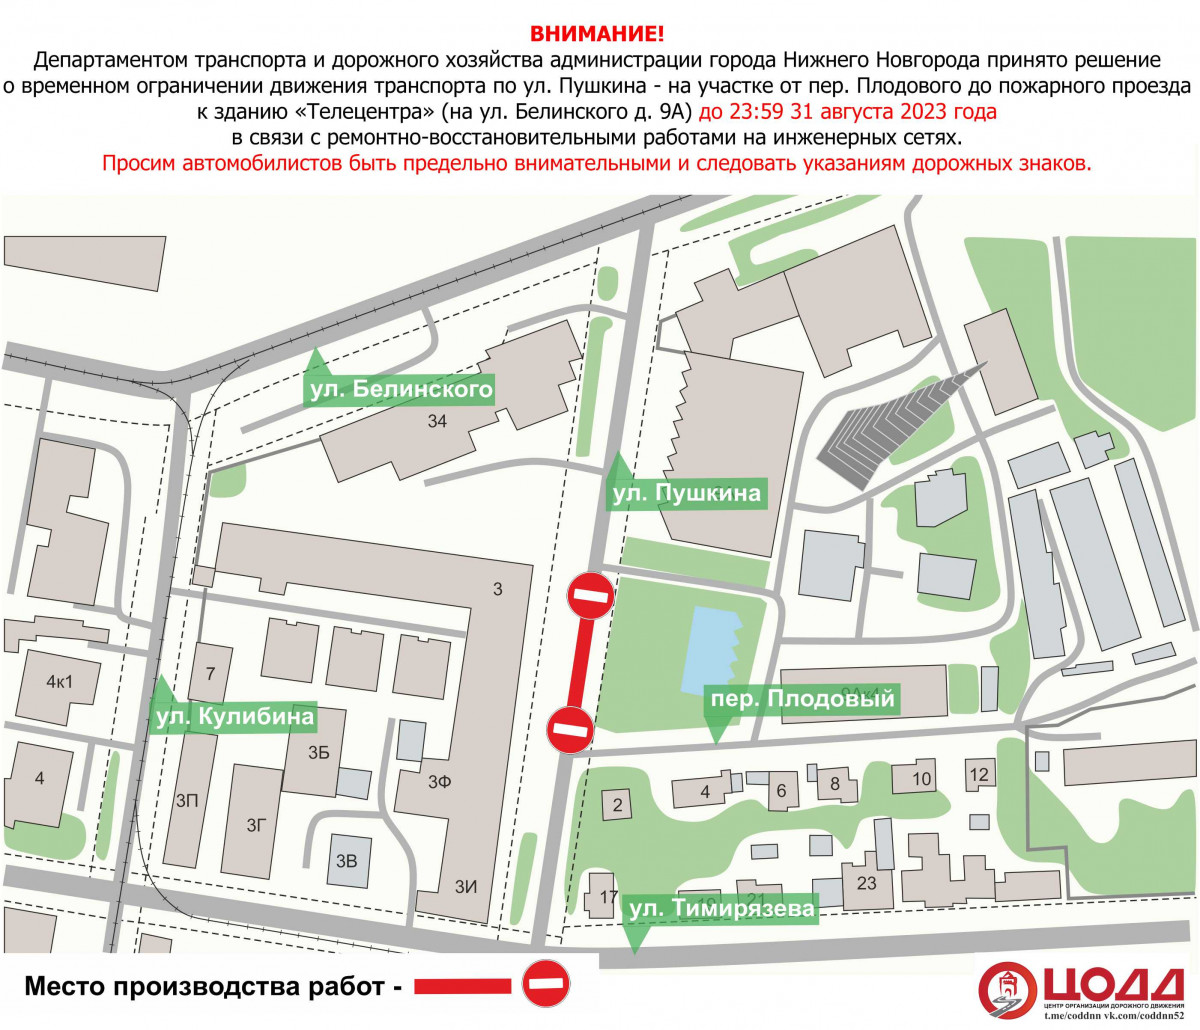 В Нижнем Новгороде приостановят движение транспорта на участке улицы Пушкина